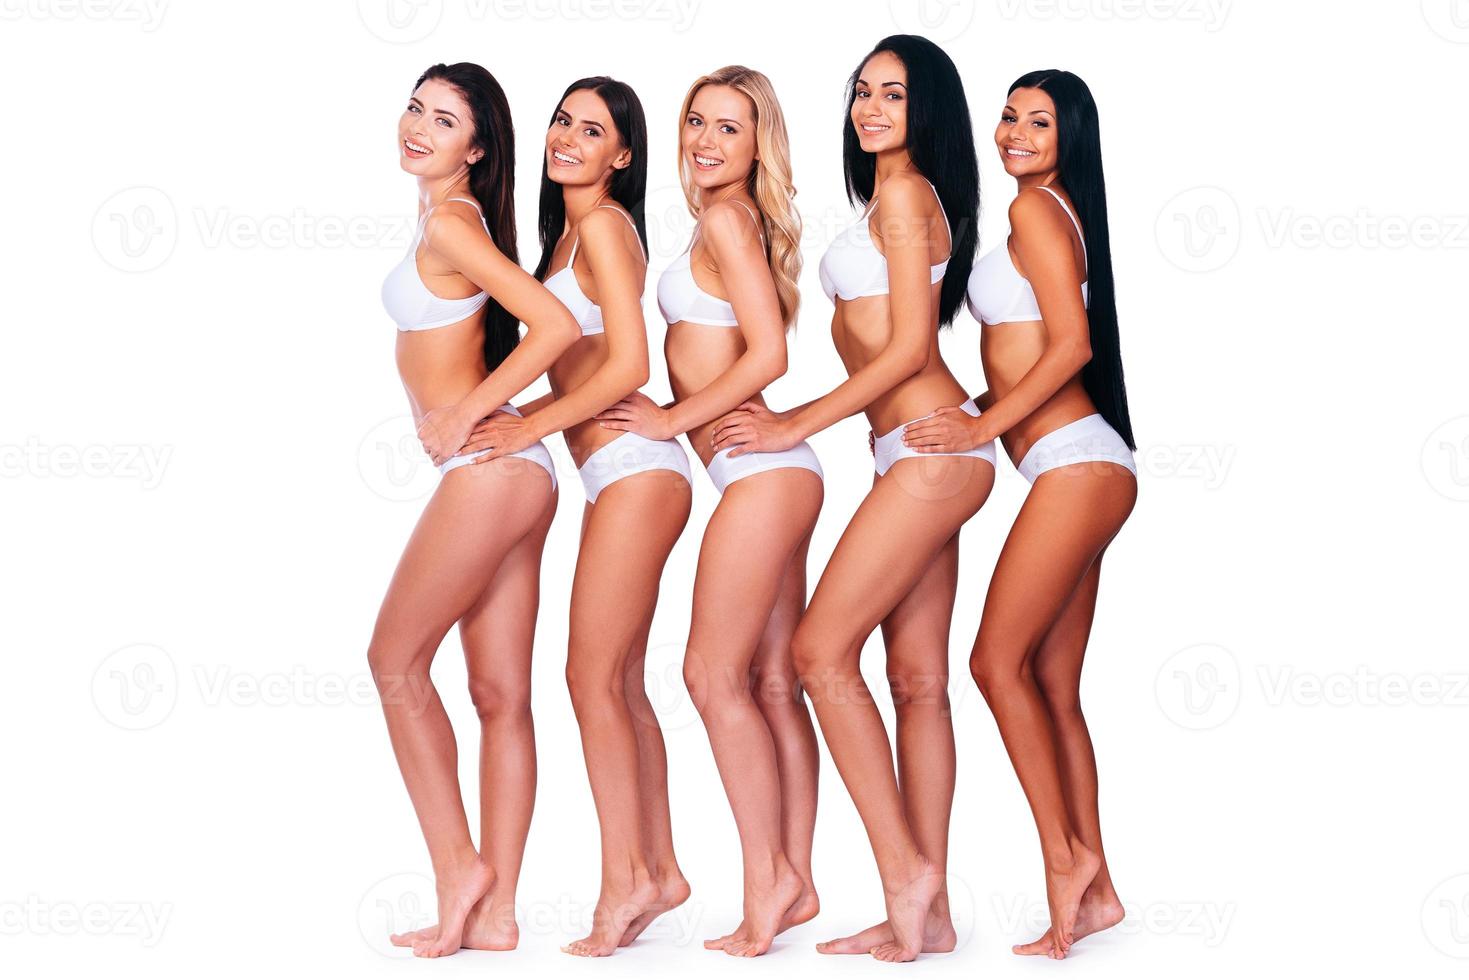 belezas em linha. vista lateral de corpo inteiro de cinco mulheres bonitas em lingerie olhando para a câmera e sorrindo em pé contra um fundo branco foto